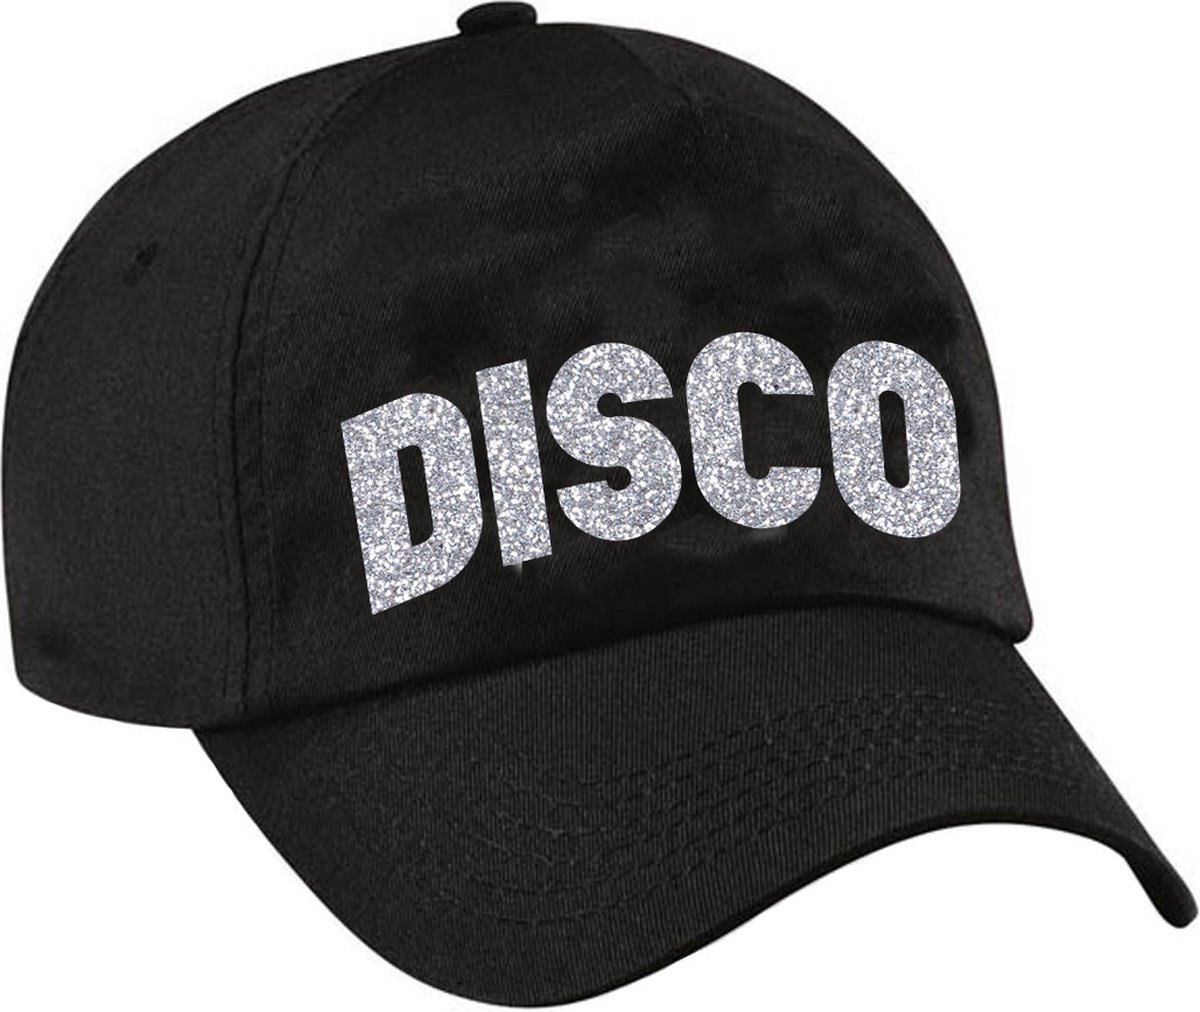 Casquette / casquette DISCO noir avec imprimé argenté pour femme et homme -  Casquette